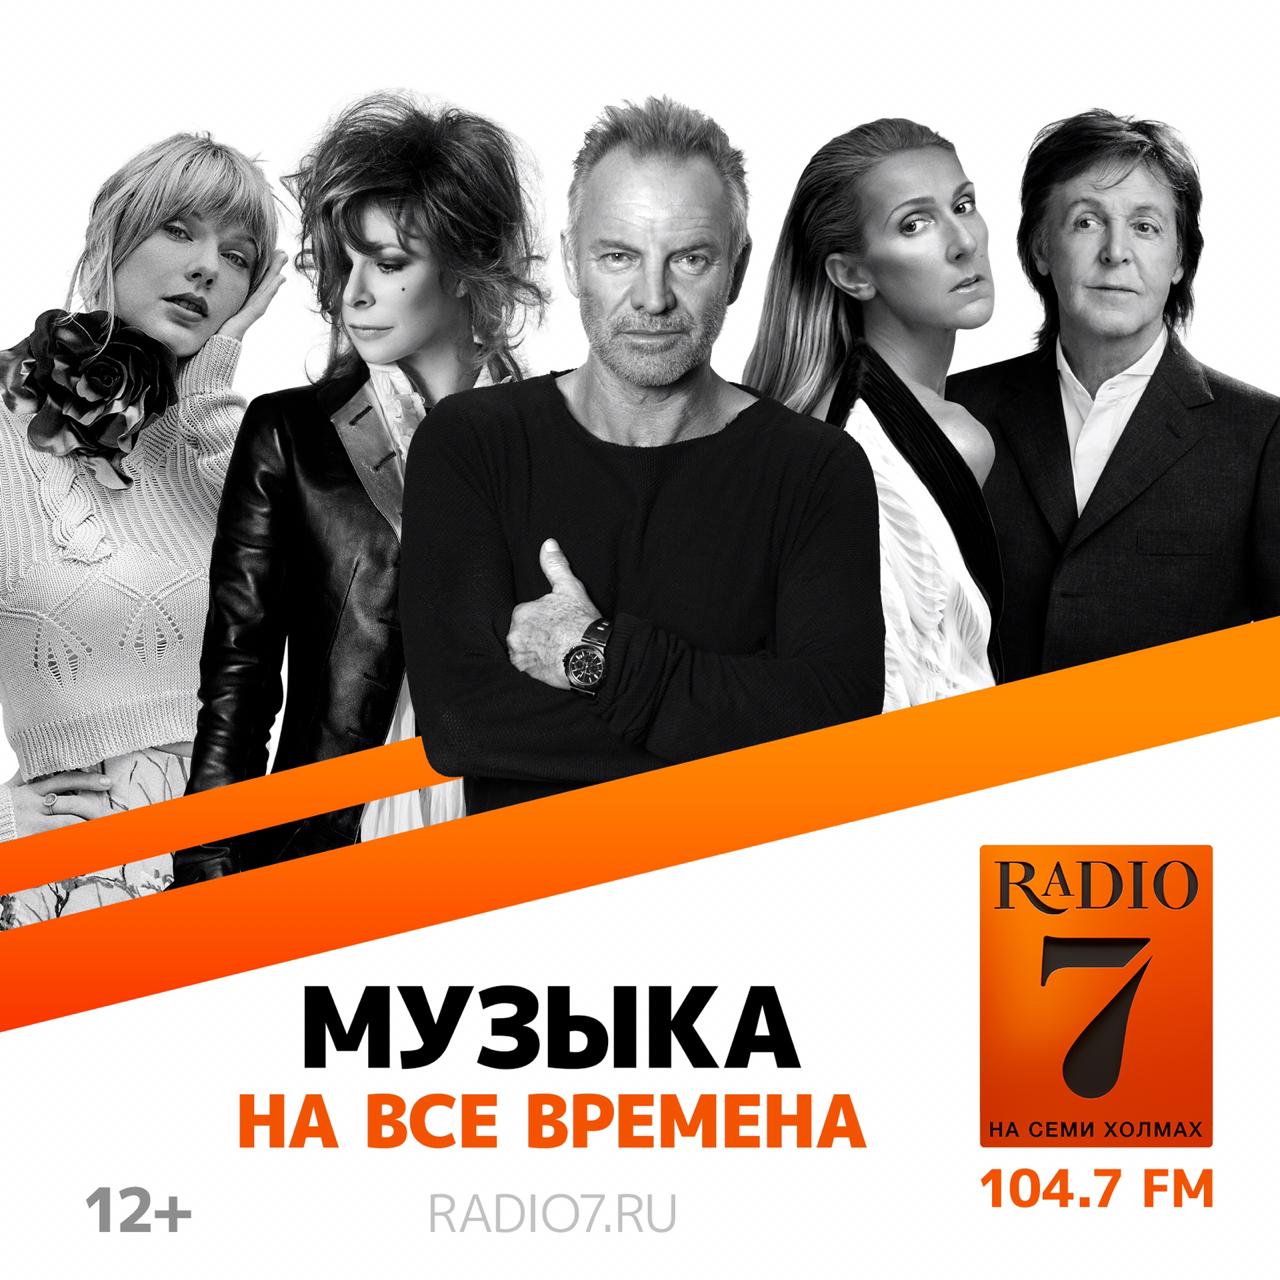 Радио на семи холмах плейлист. Радио на семи холмах. Радио 7 на 7. Радио 7 на семи холмах Москва. Радио 7 реклама.